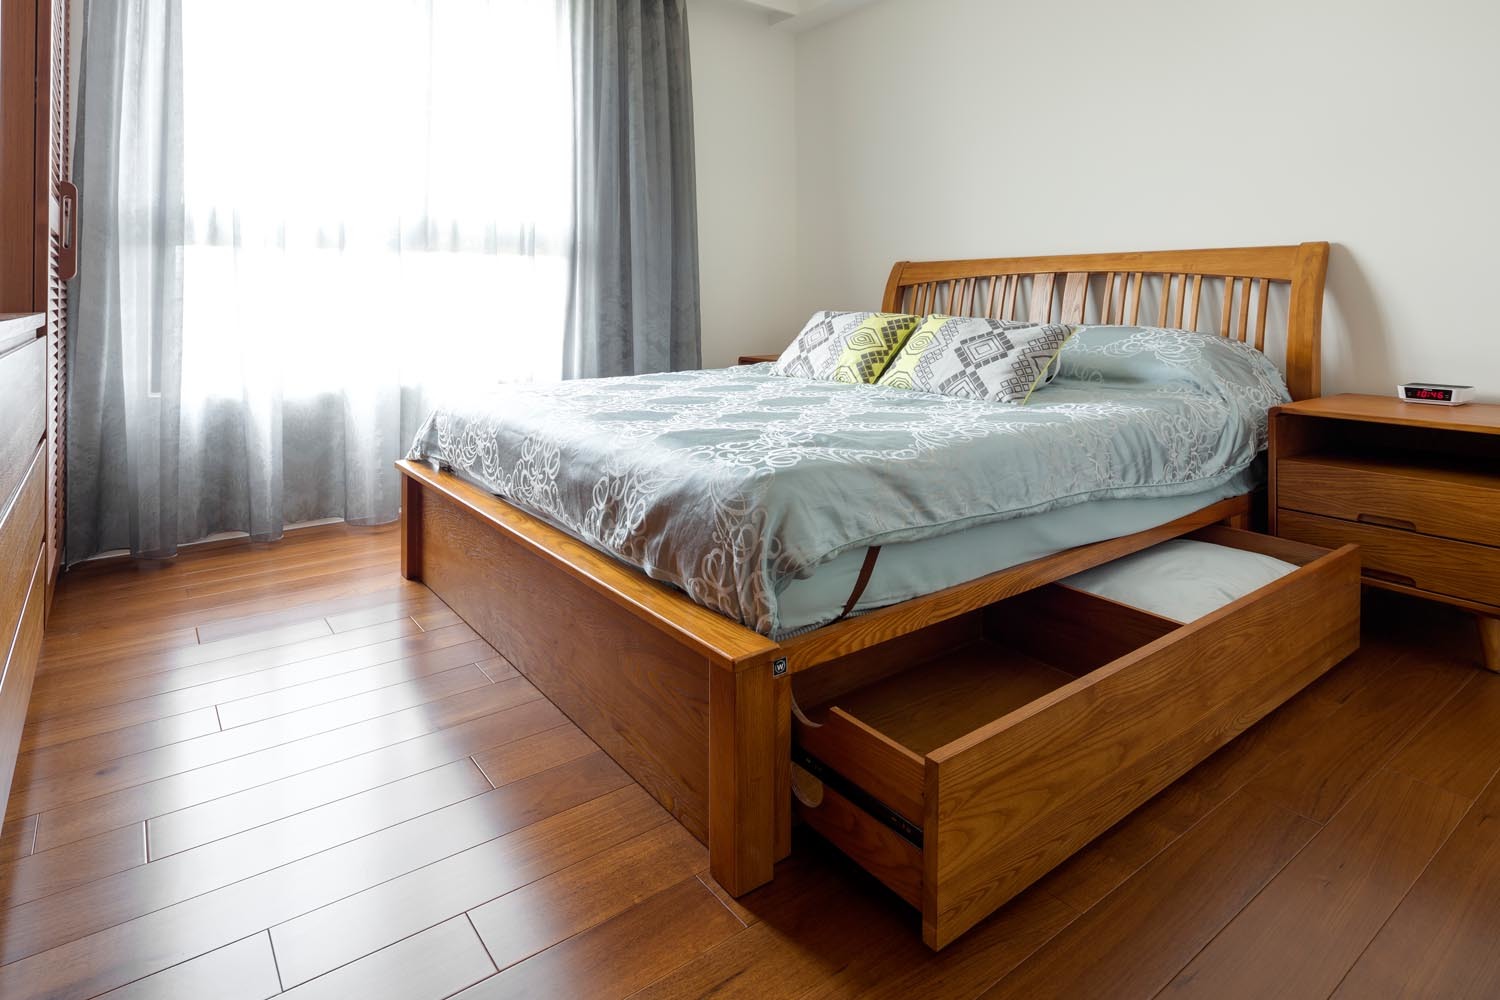 緬甸柚木實木地板搭配柚木實木床架打造北歐風格臥室